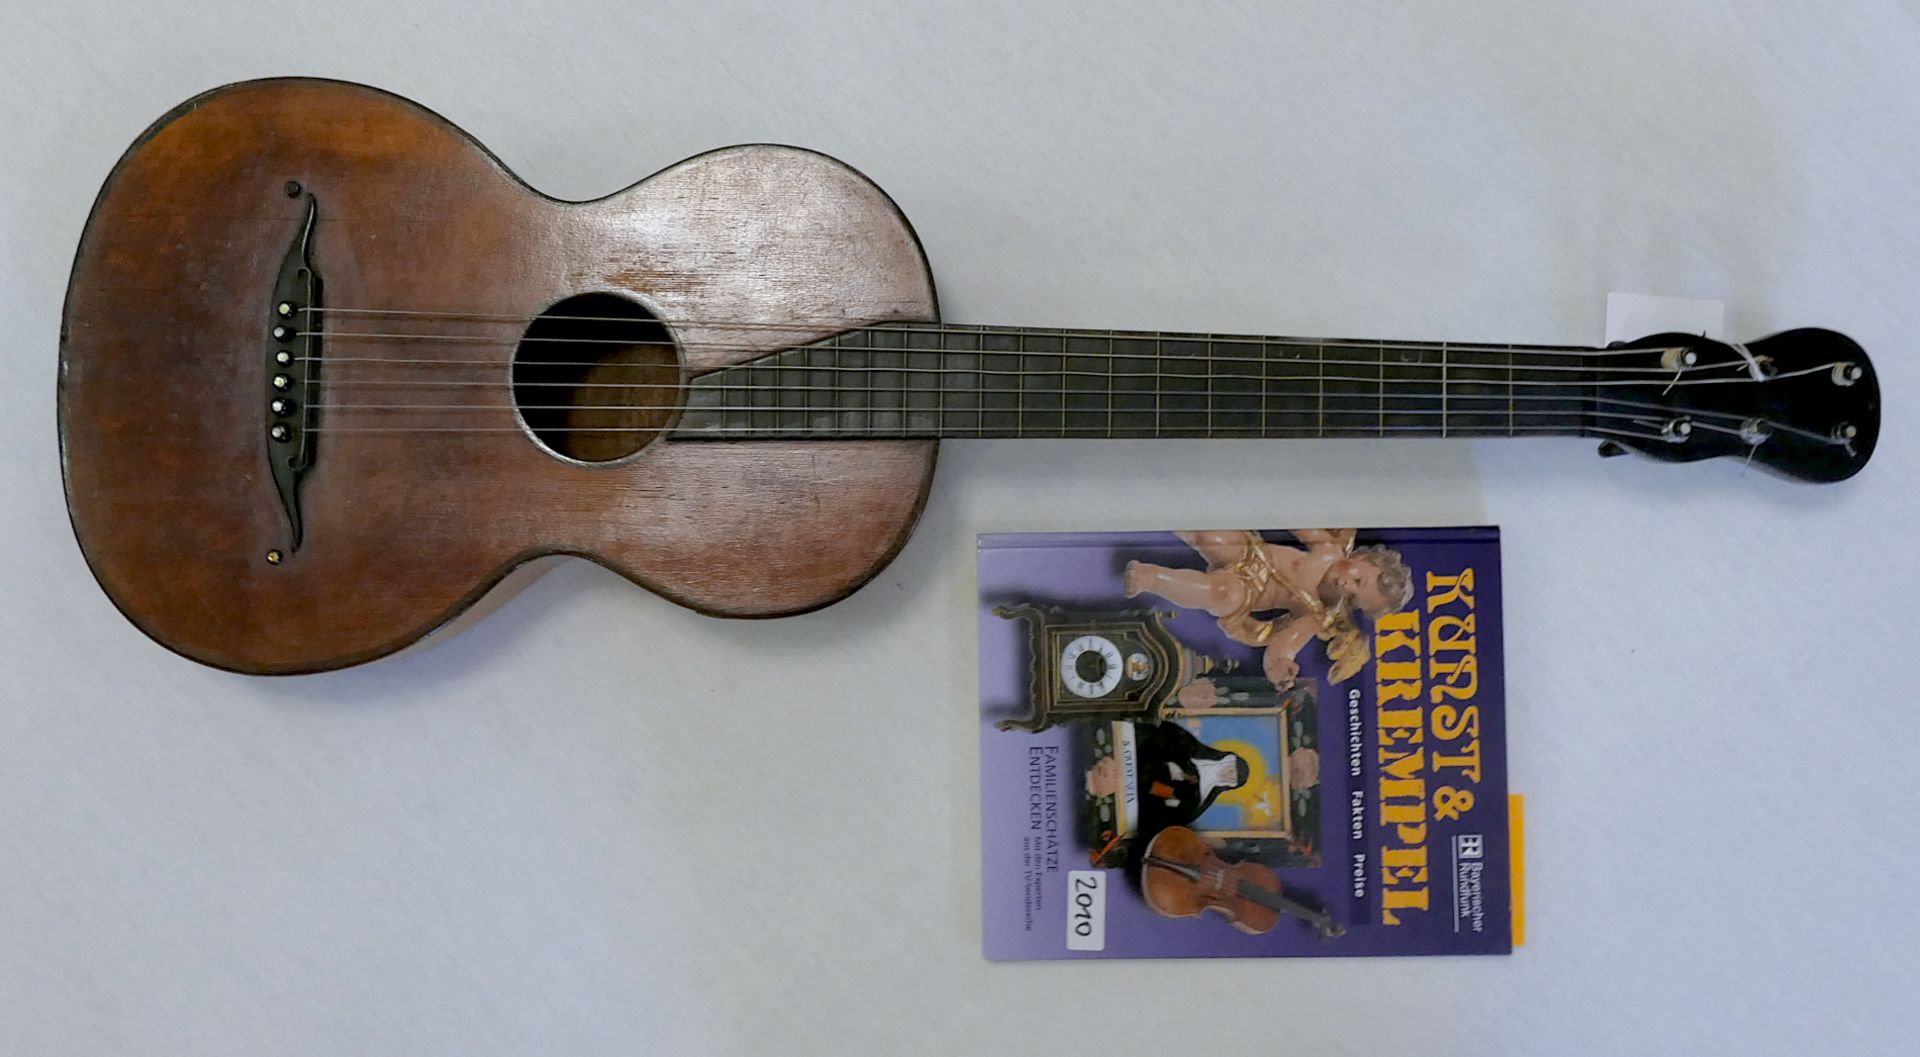 1 Gitarre der Biedermeier-Zeit, inwendig mit Klebezettel "CHs. DEININGER Paris" dat. 1833, ca. L 88c